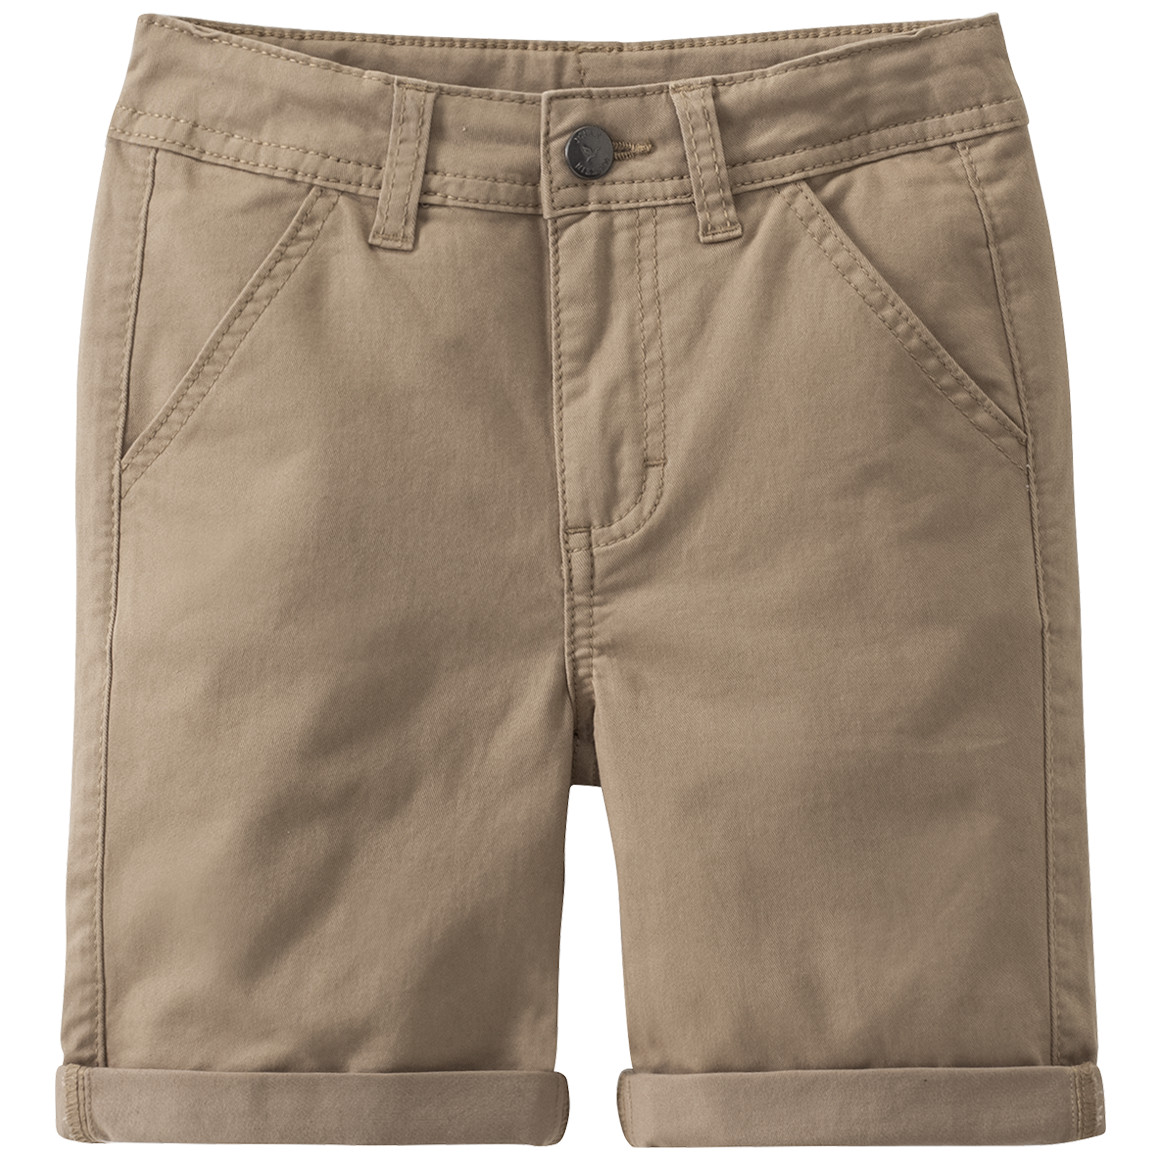 Jungen Bermuda-Shorts in Unifarben von Topolino